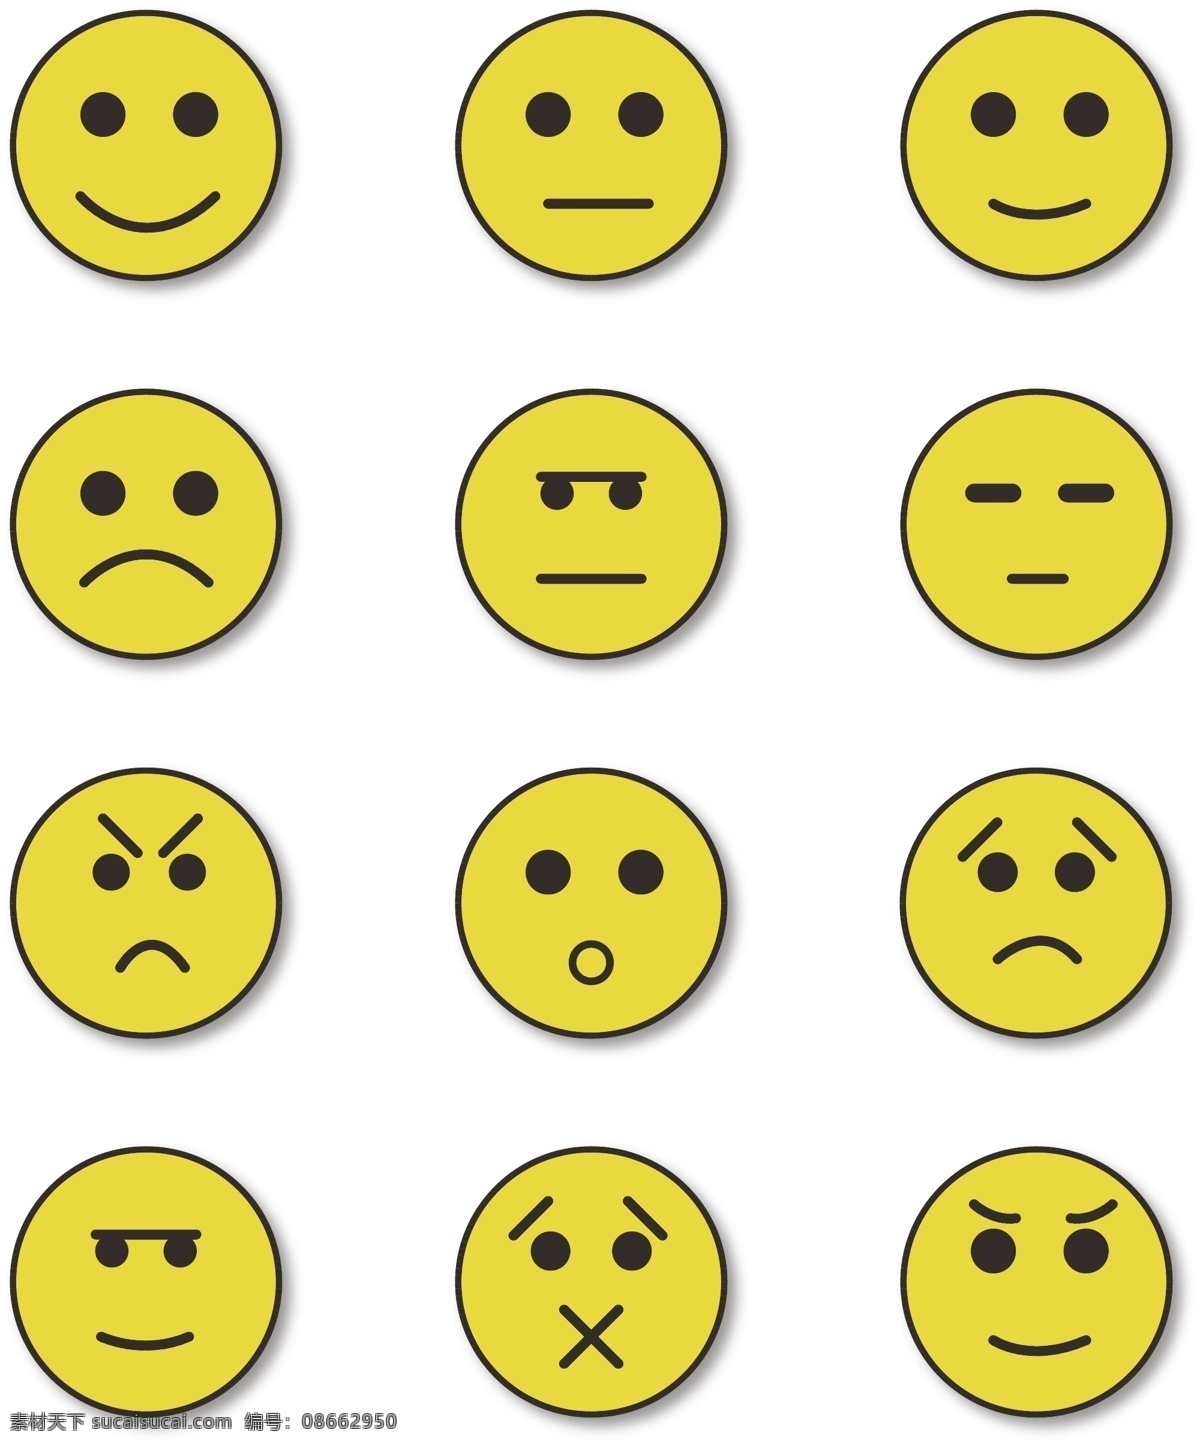 原创 简约 可爱 卡通 元素 表情 icon 矢量 可商用 小表情